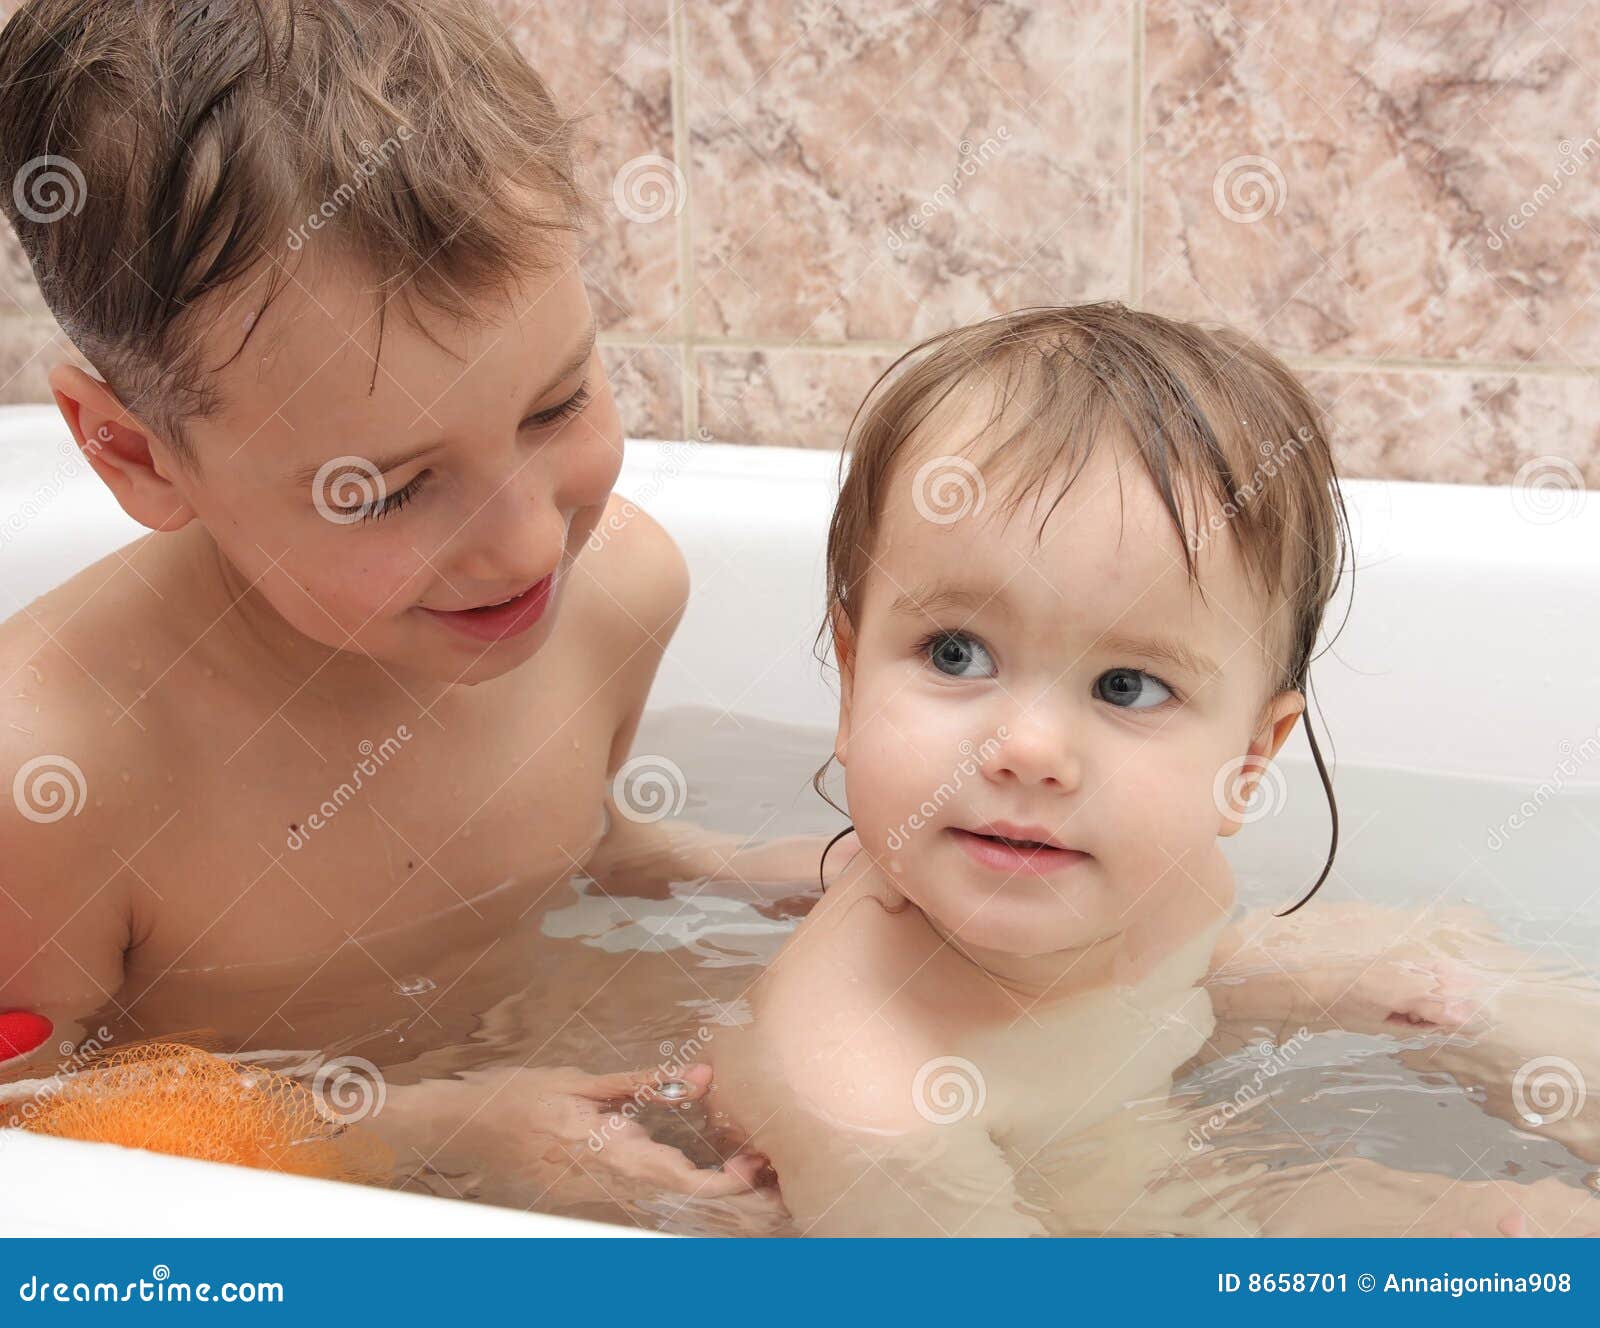 Папа сын в ванной. Мальчик и девочка в ванной. Маленькие дети купаются в ванной. Купаемся вместе. Мальчик и девочка купаются в ванной.